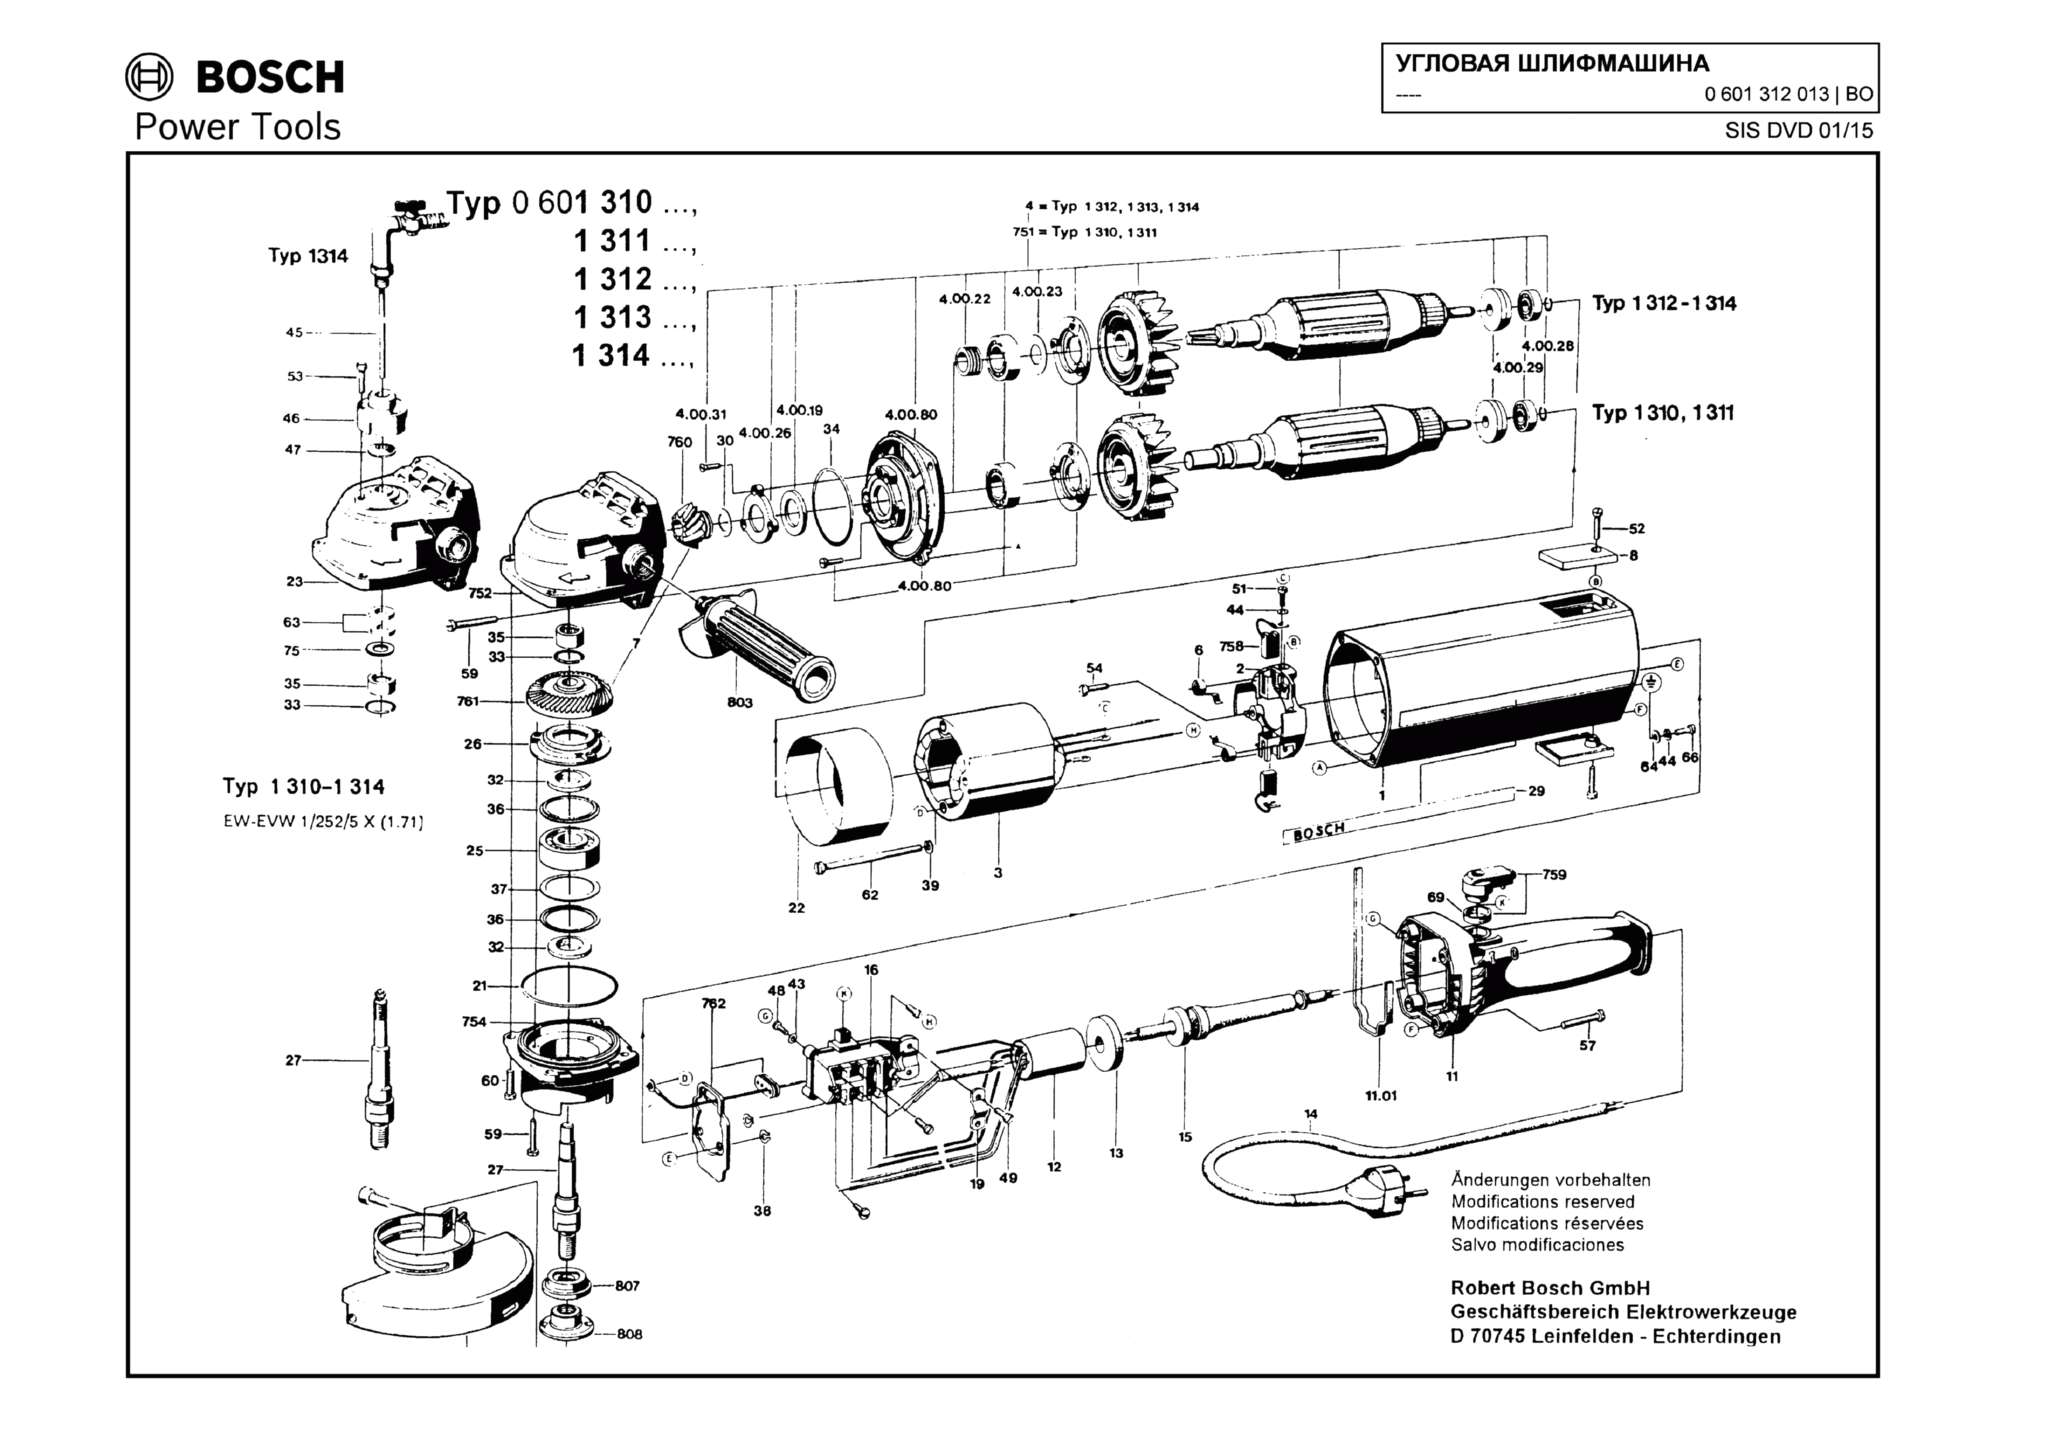 Запчасти, схема и деталировка Bosch (ТИП 0601312013)